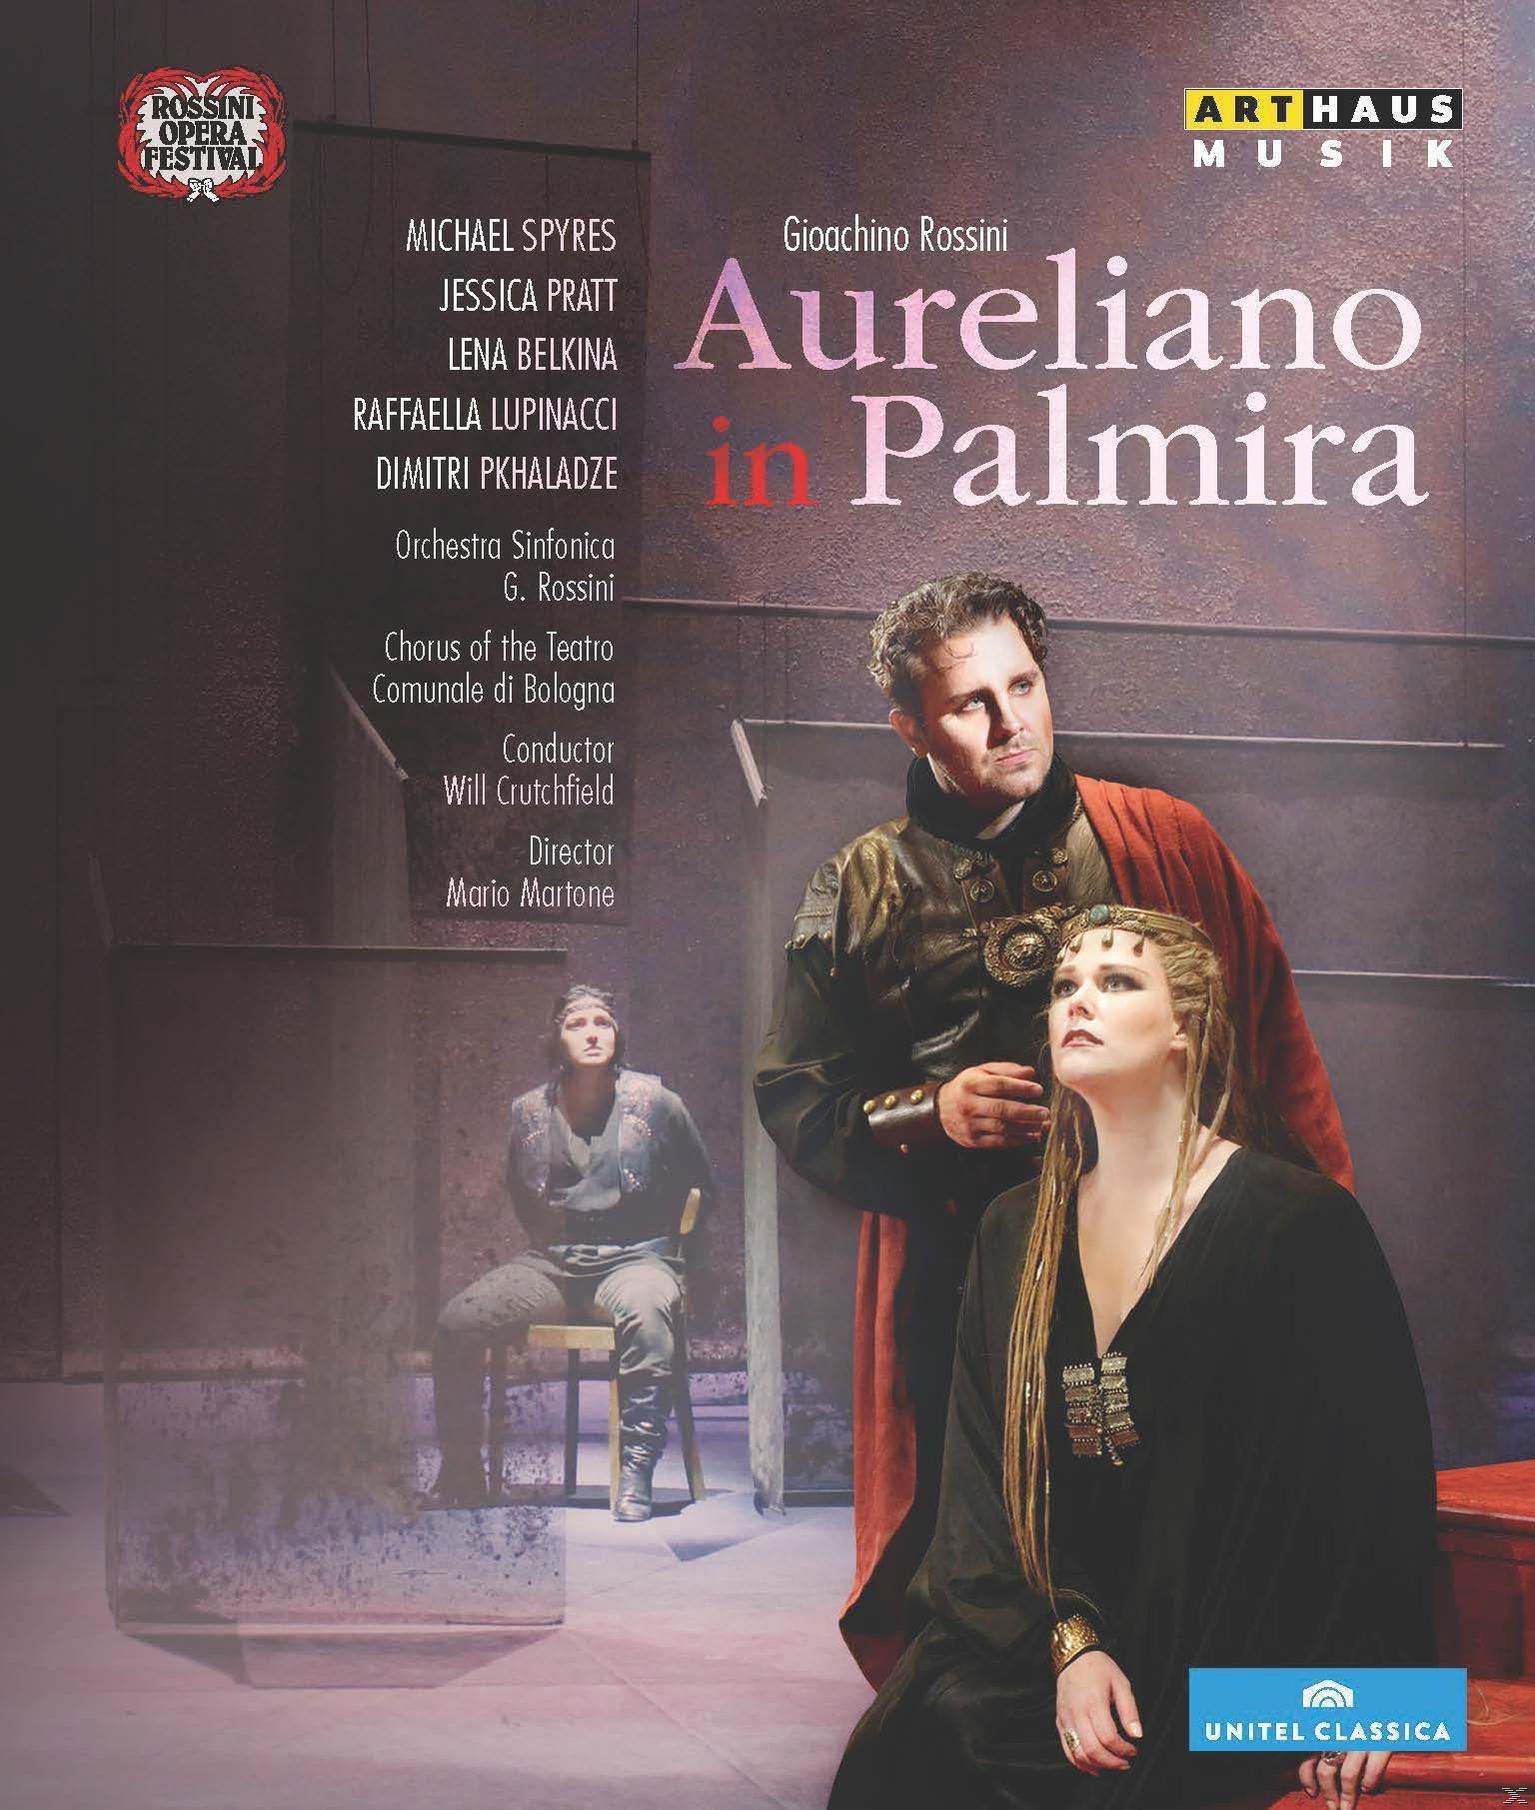 VARIOUS - In - Aureliano Palmira (Blu-ray)